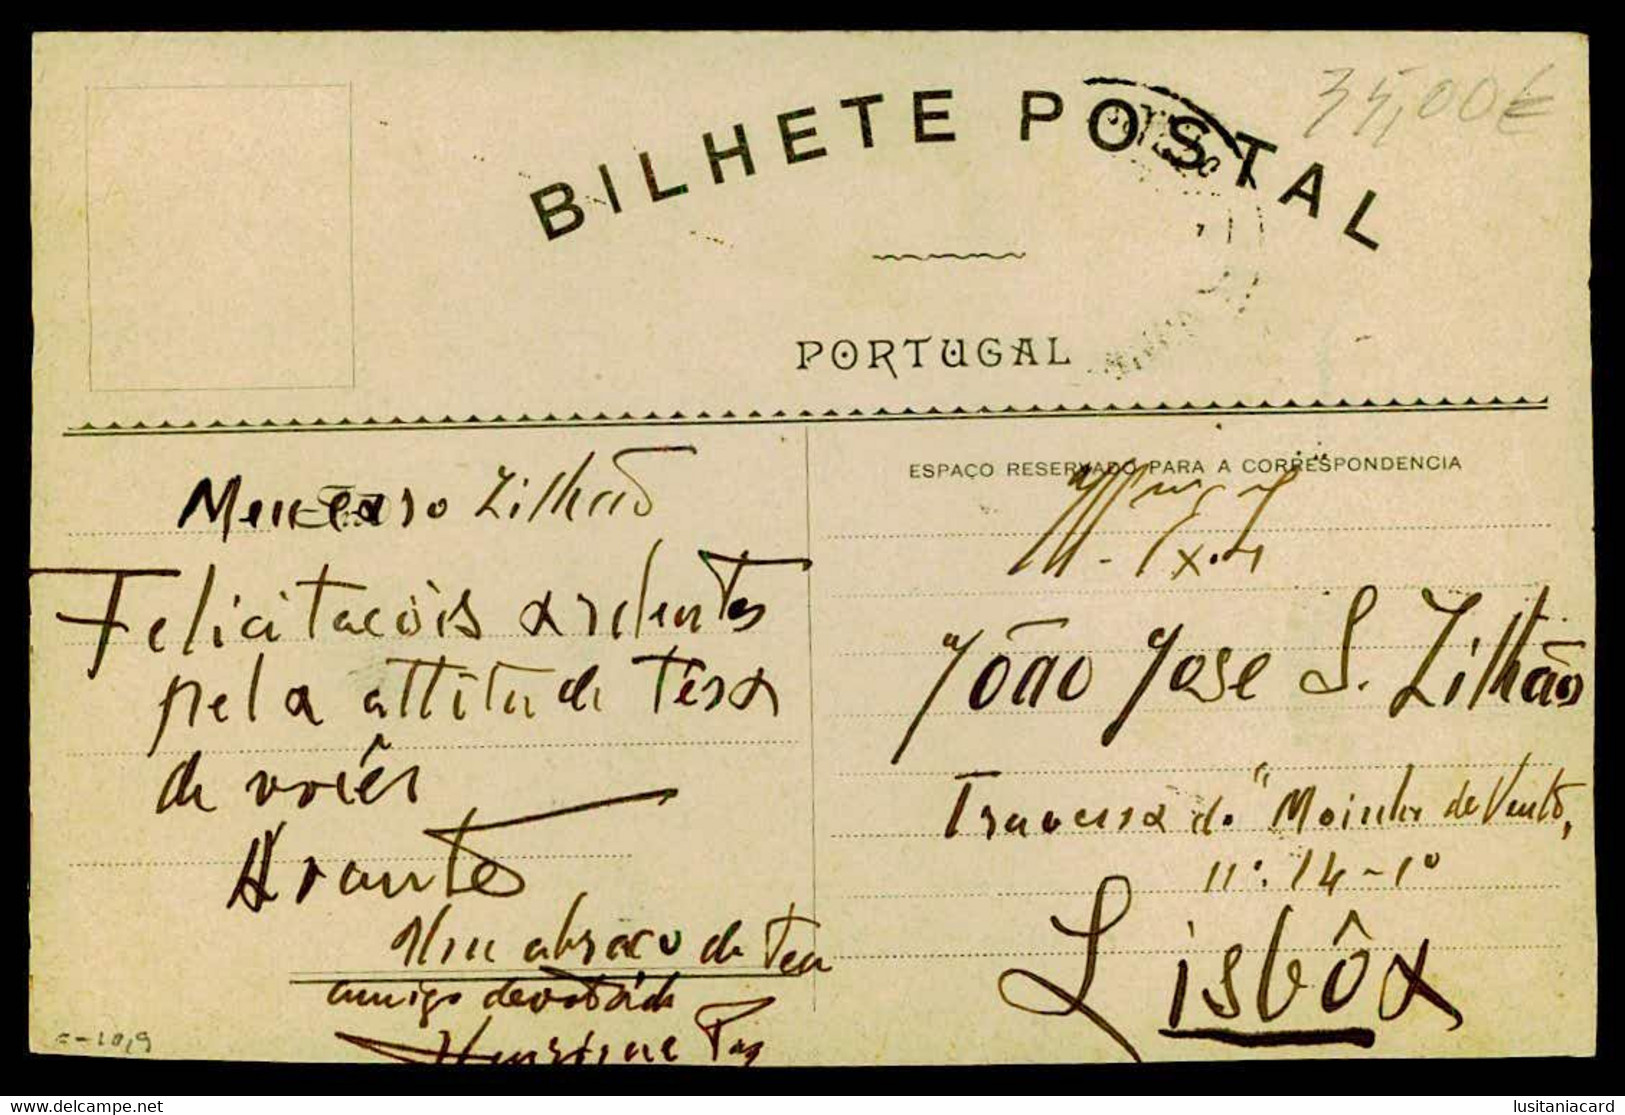 BRAGANÇA -MUNICIPIOS - Antiga Casa Da Camara.( Ed. R. Paula/ Off. Do Commercio Do Porto)  Carte Postale - Bragança